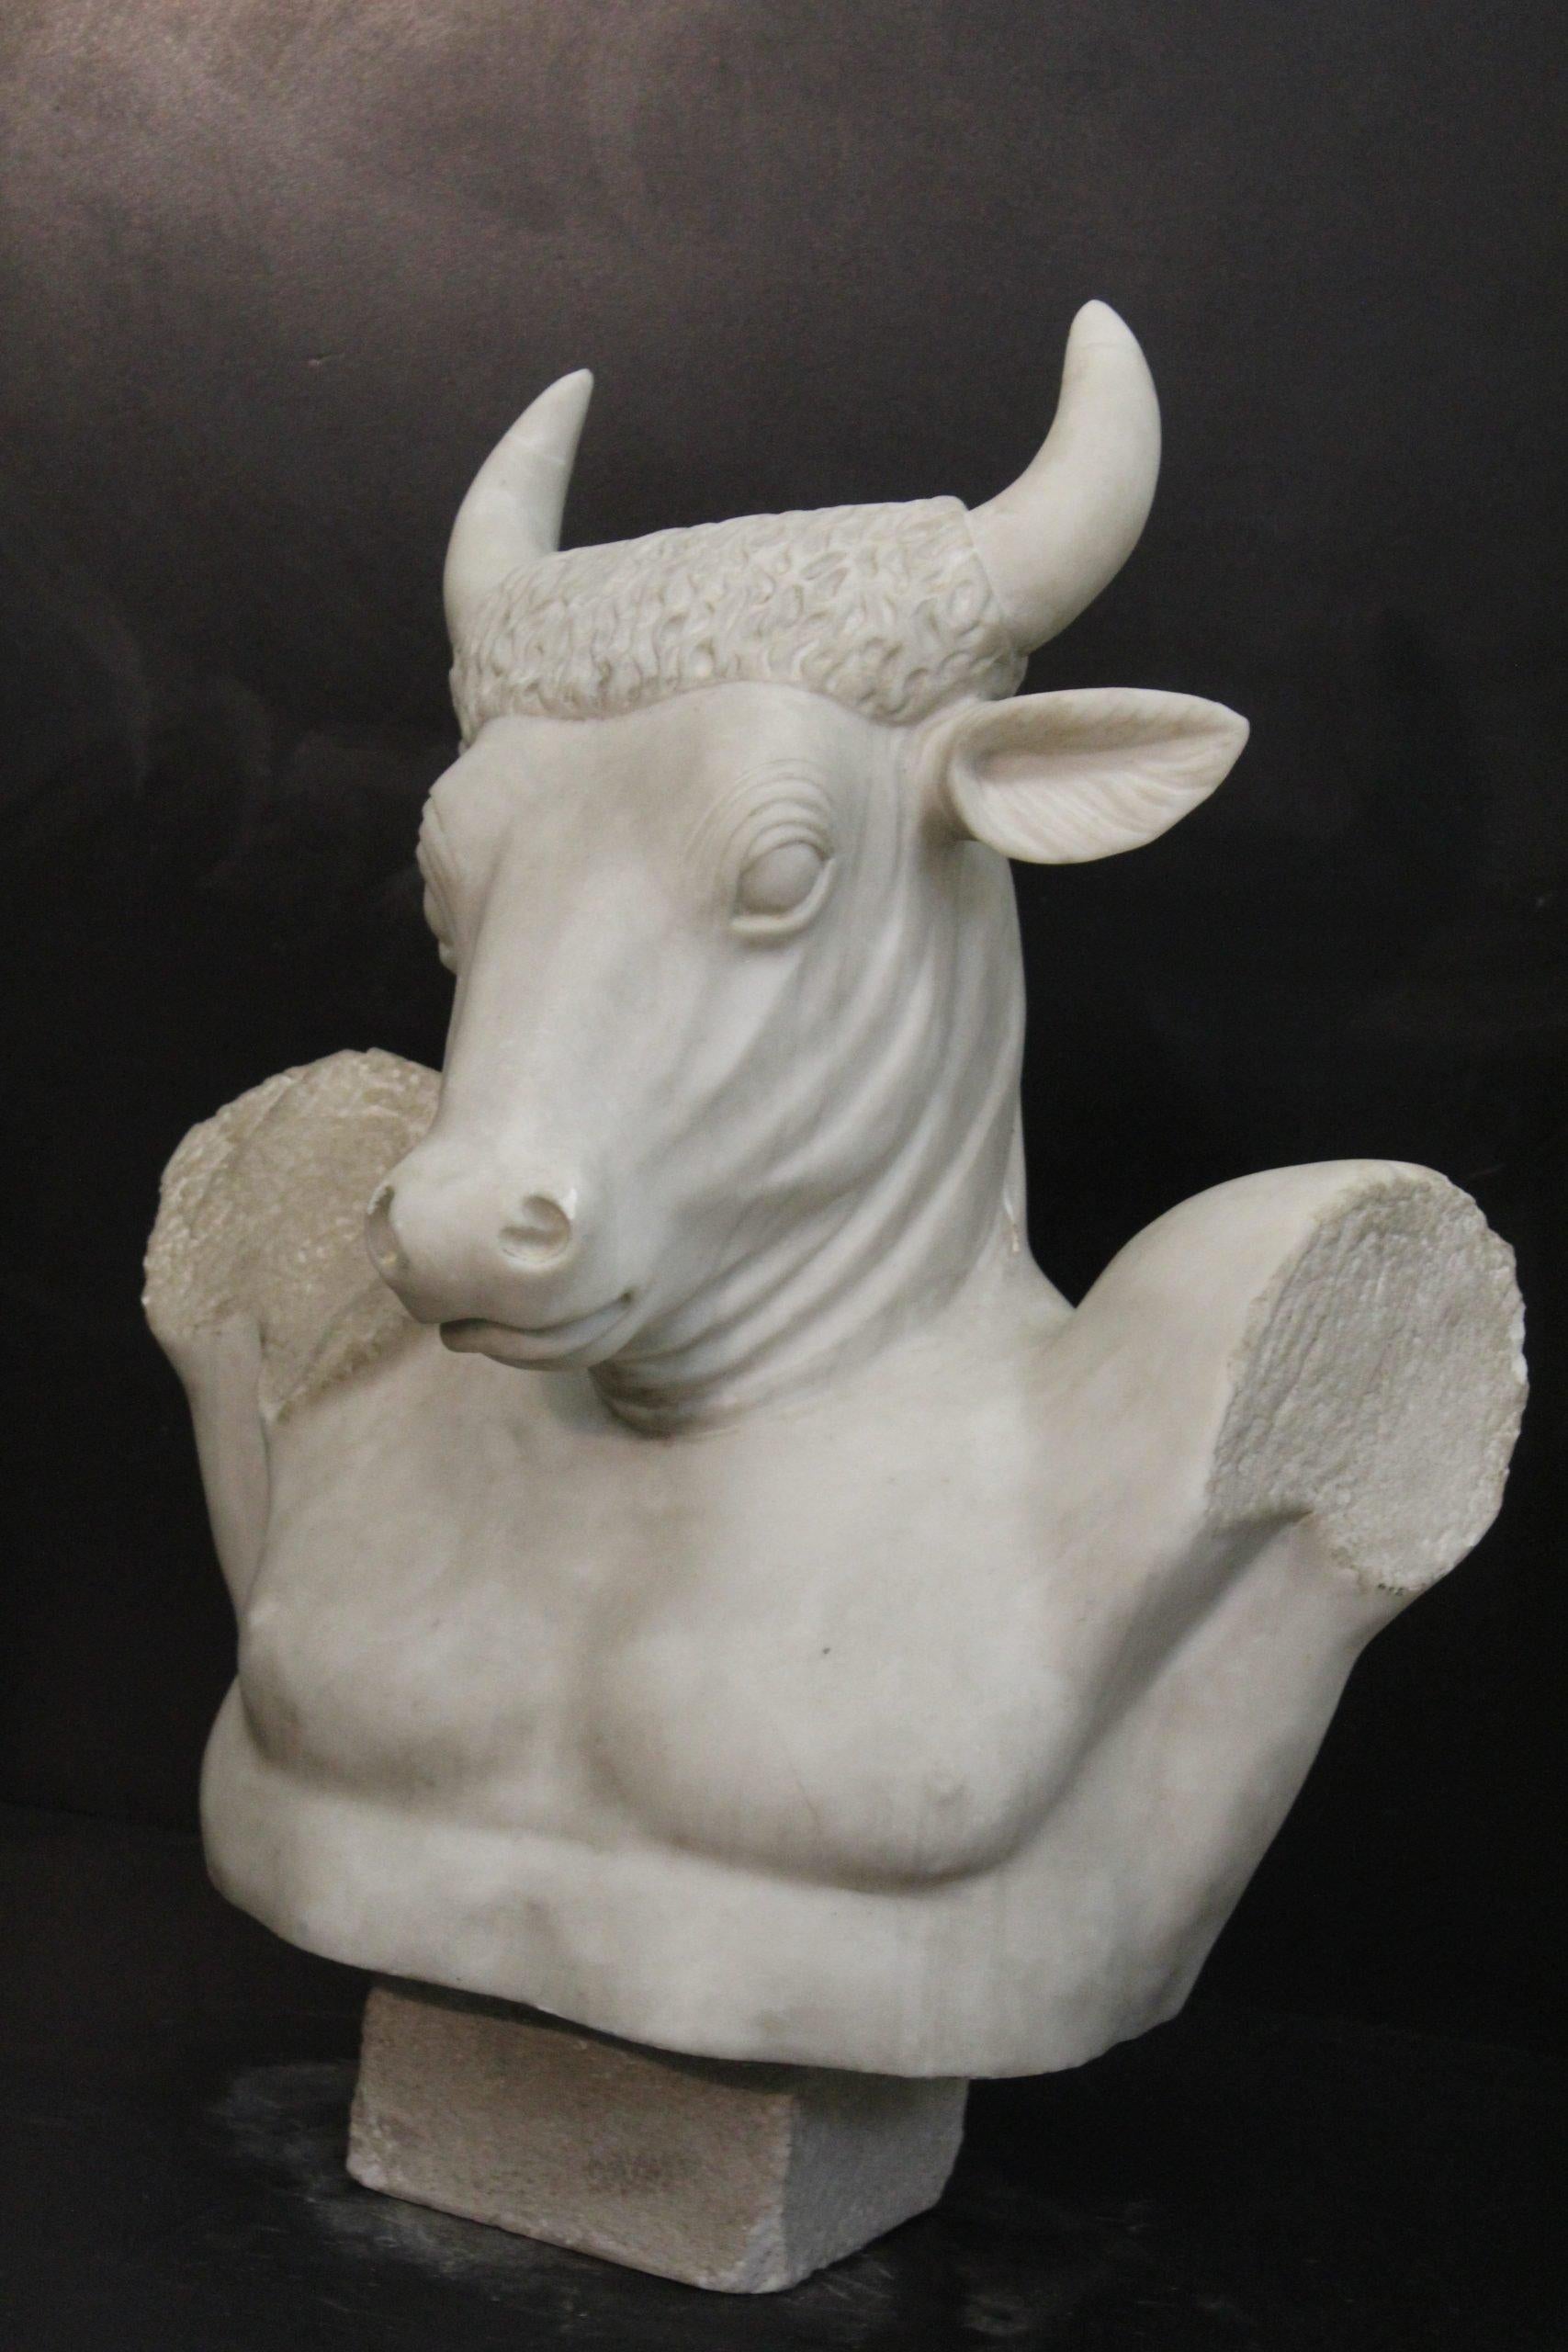 Minotaur bust sculpture.